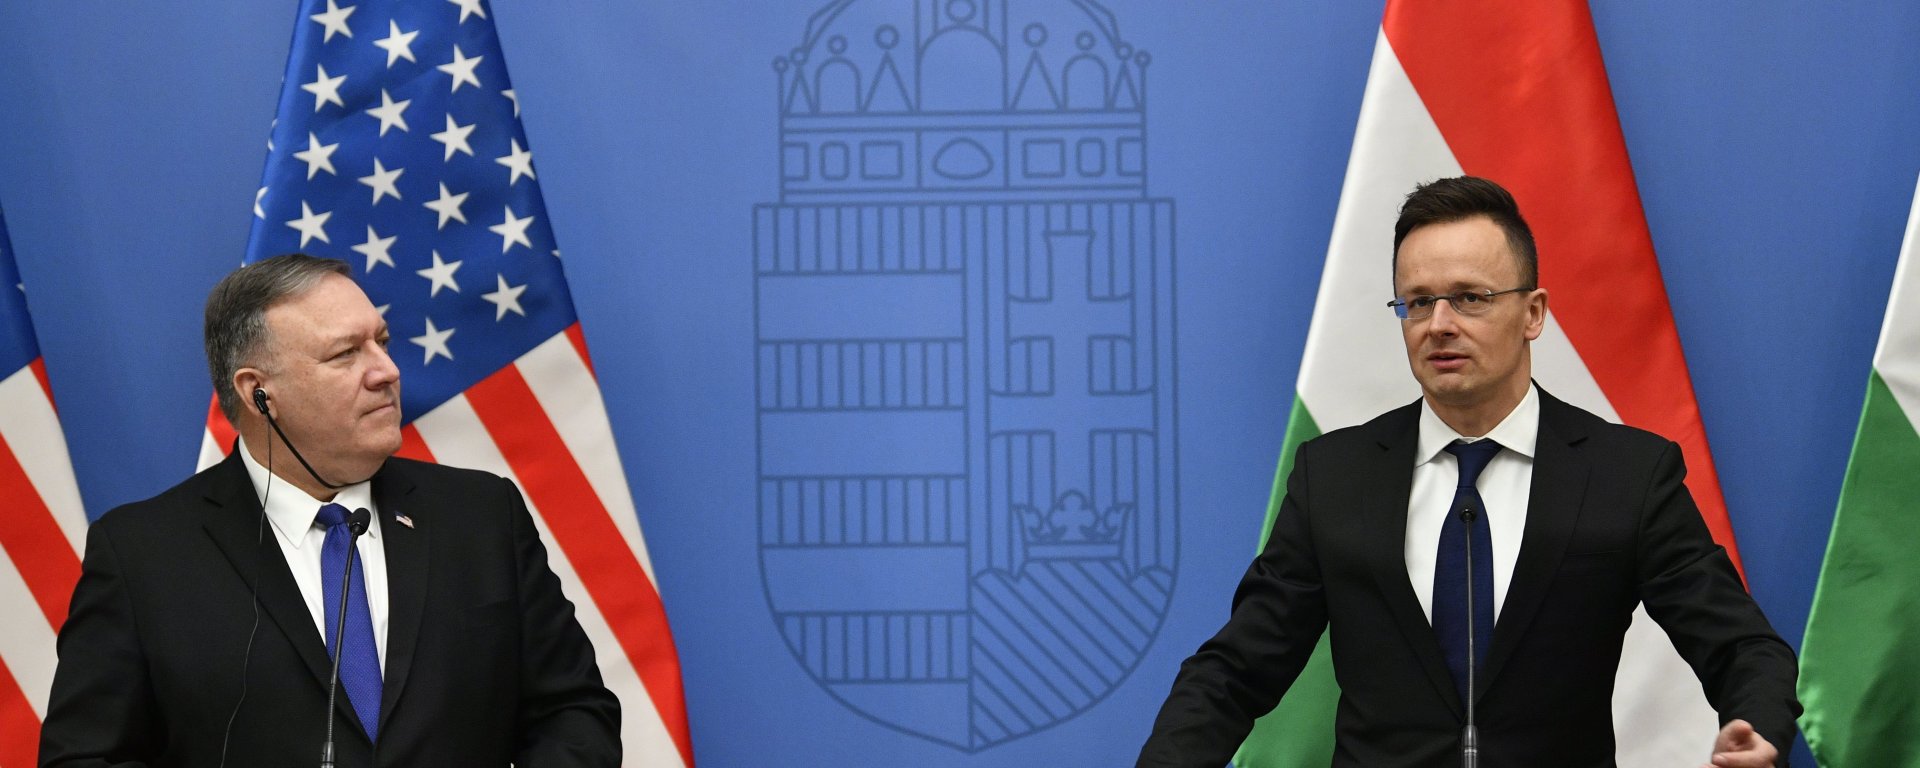 США призвали Венгрию дружить с Украиной, а не Россией